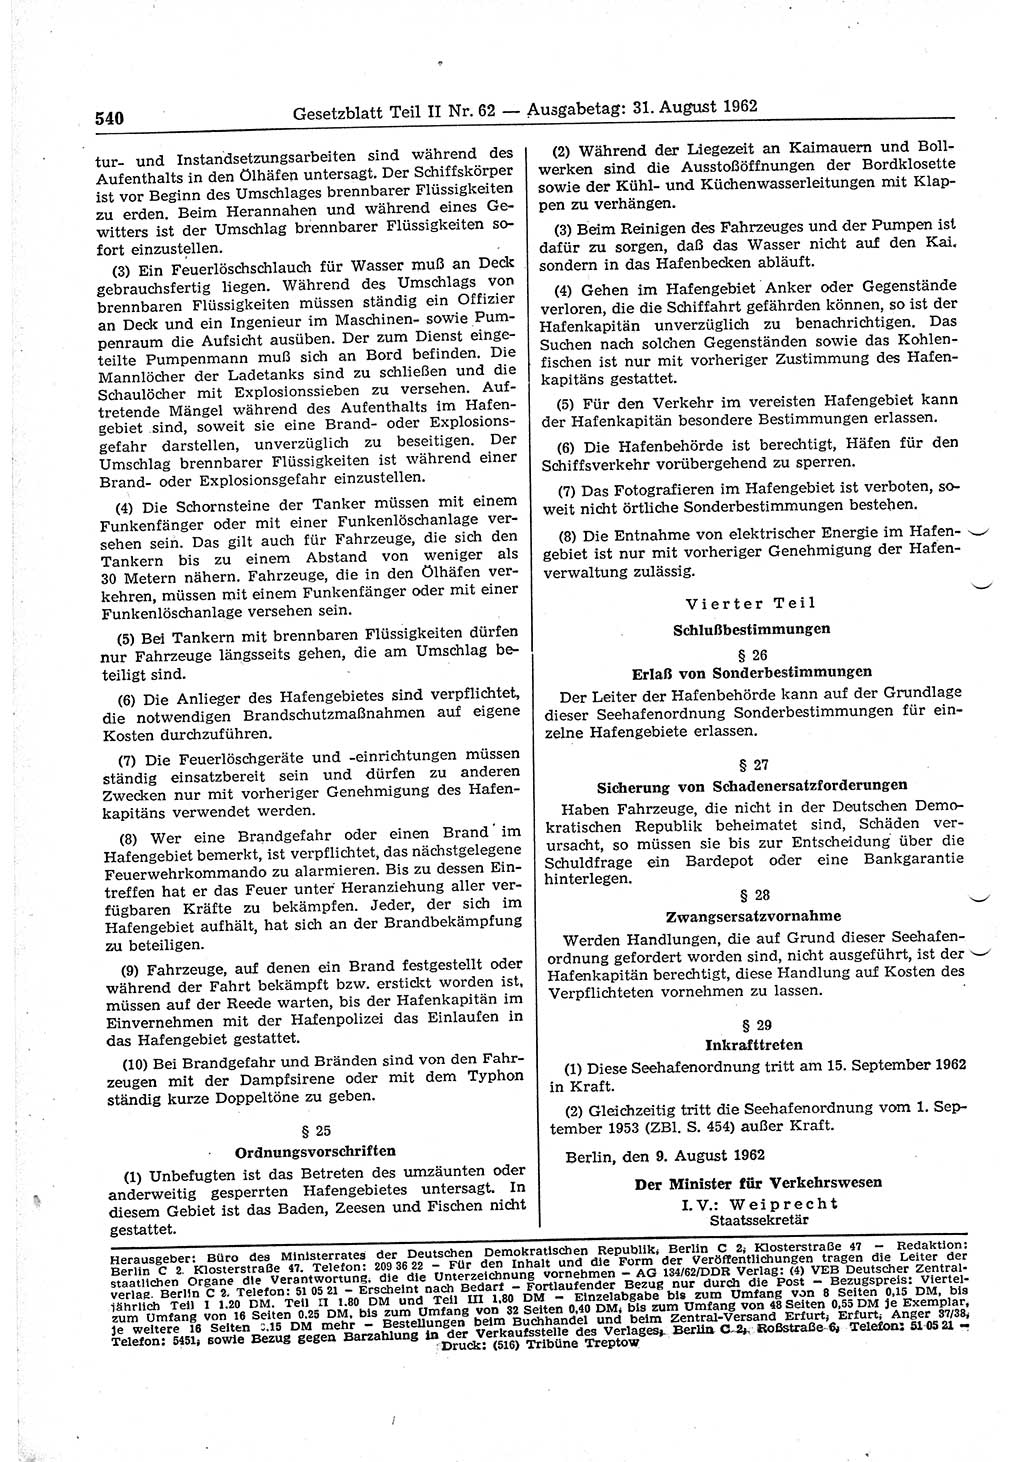 Gesetzblatt (GBl.) der Deutschen Demokratischen Republik (DDR) Teil ⅠⅠ 1962, Seite 540 (GBl. DDR ⅠⅠ 1962, S. 540)